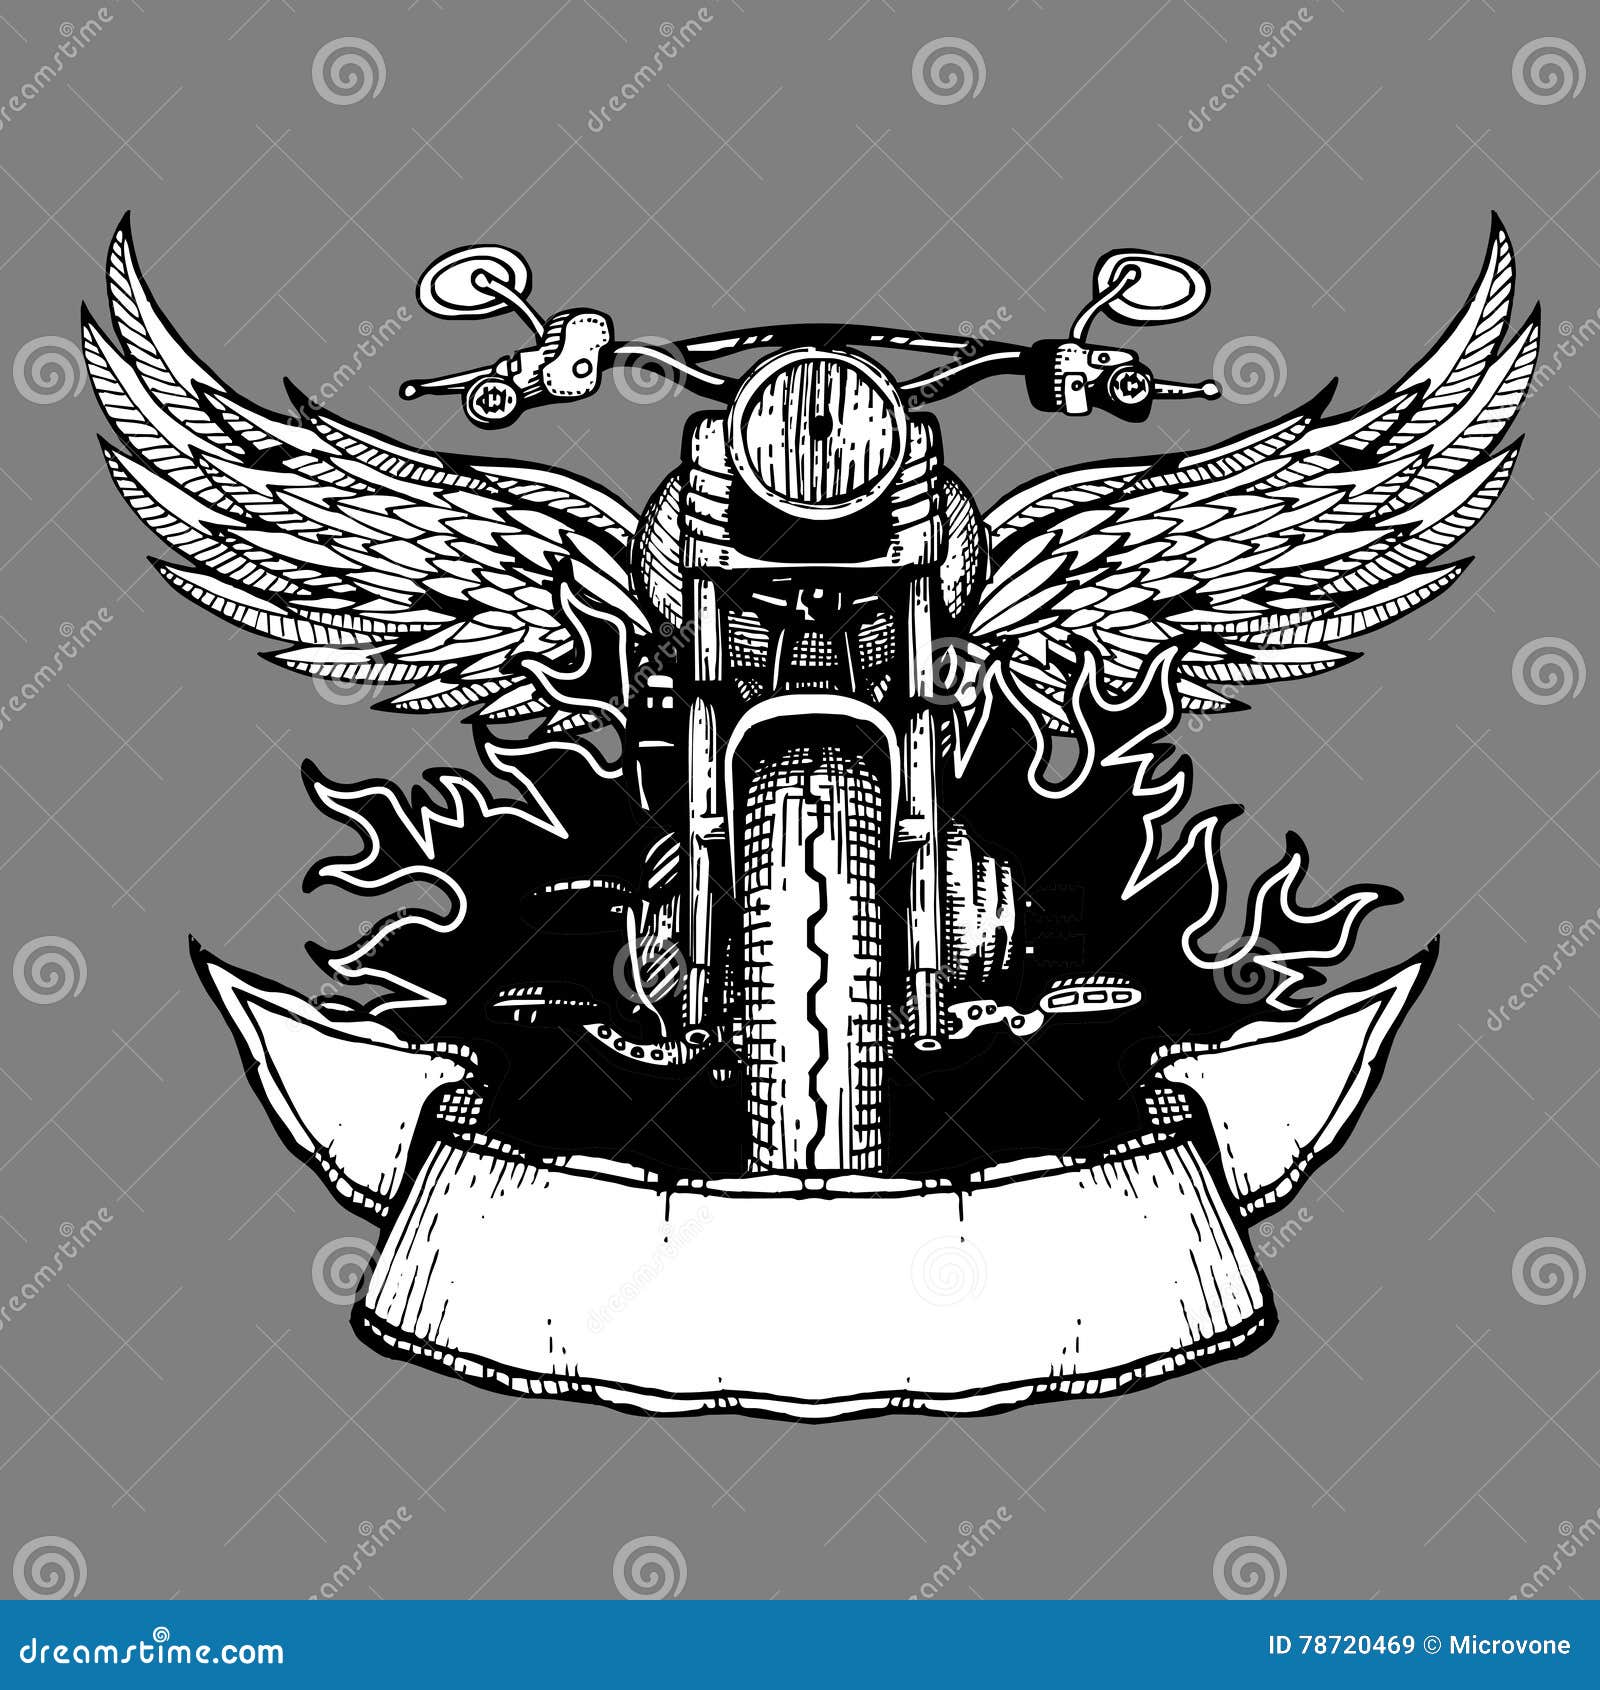 Vintage Biker Vector Label Emblem Logo Badge With Motorcycle Stock